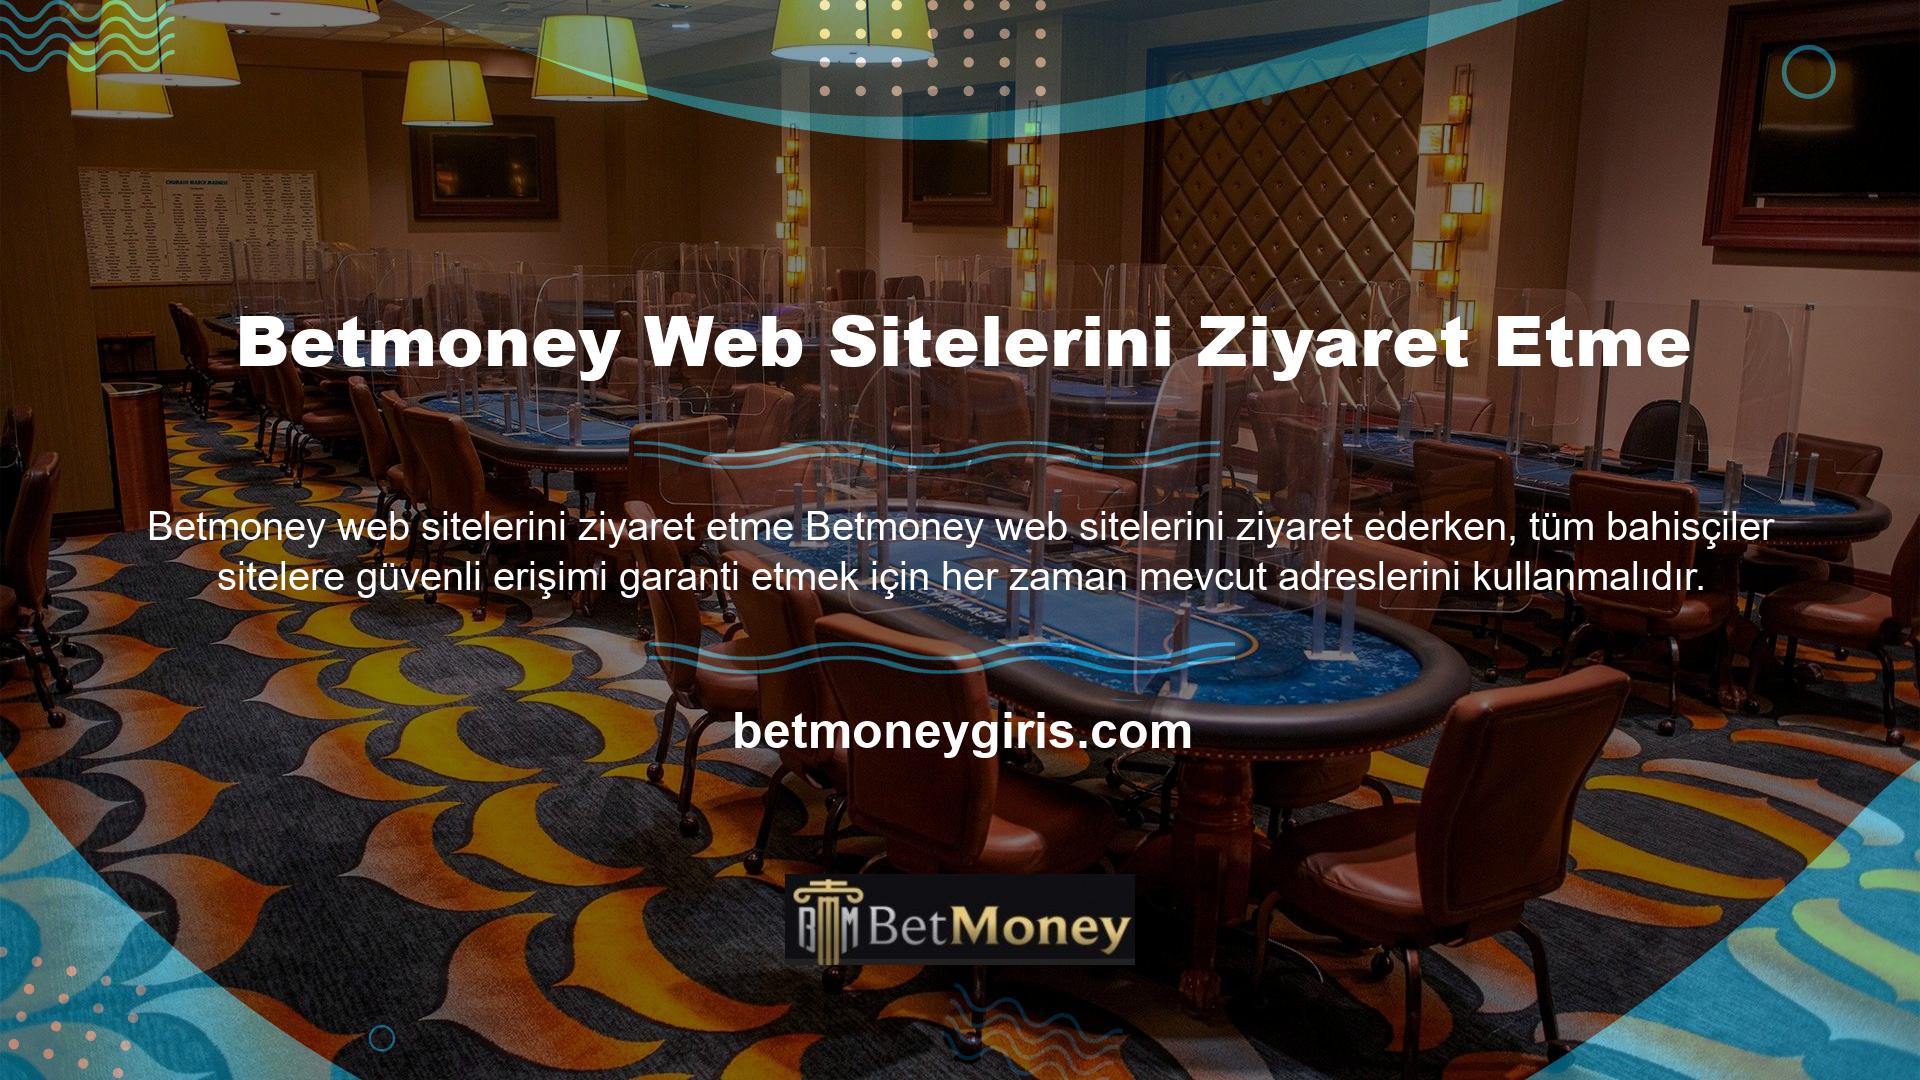 Bir casino kuruluşunun web sitesi adresini değiştirmek sıklıkla karşılaşılan bir durumdur